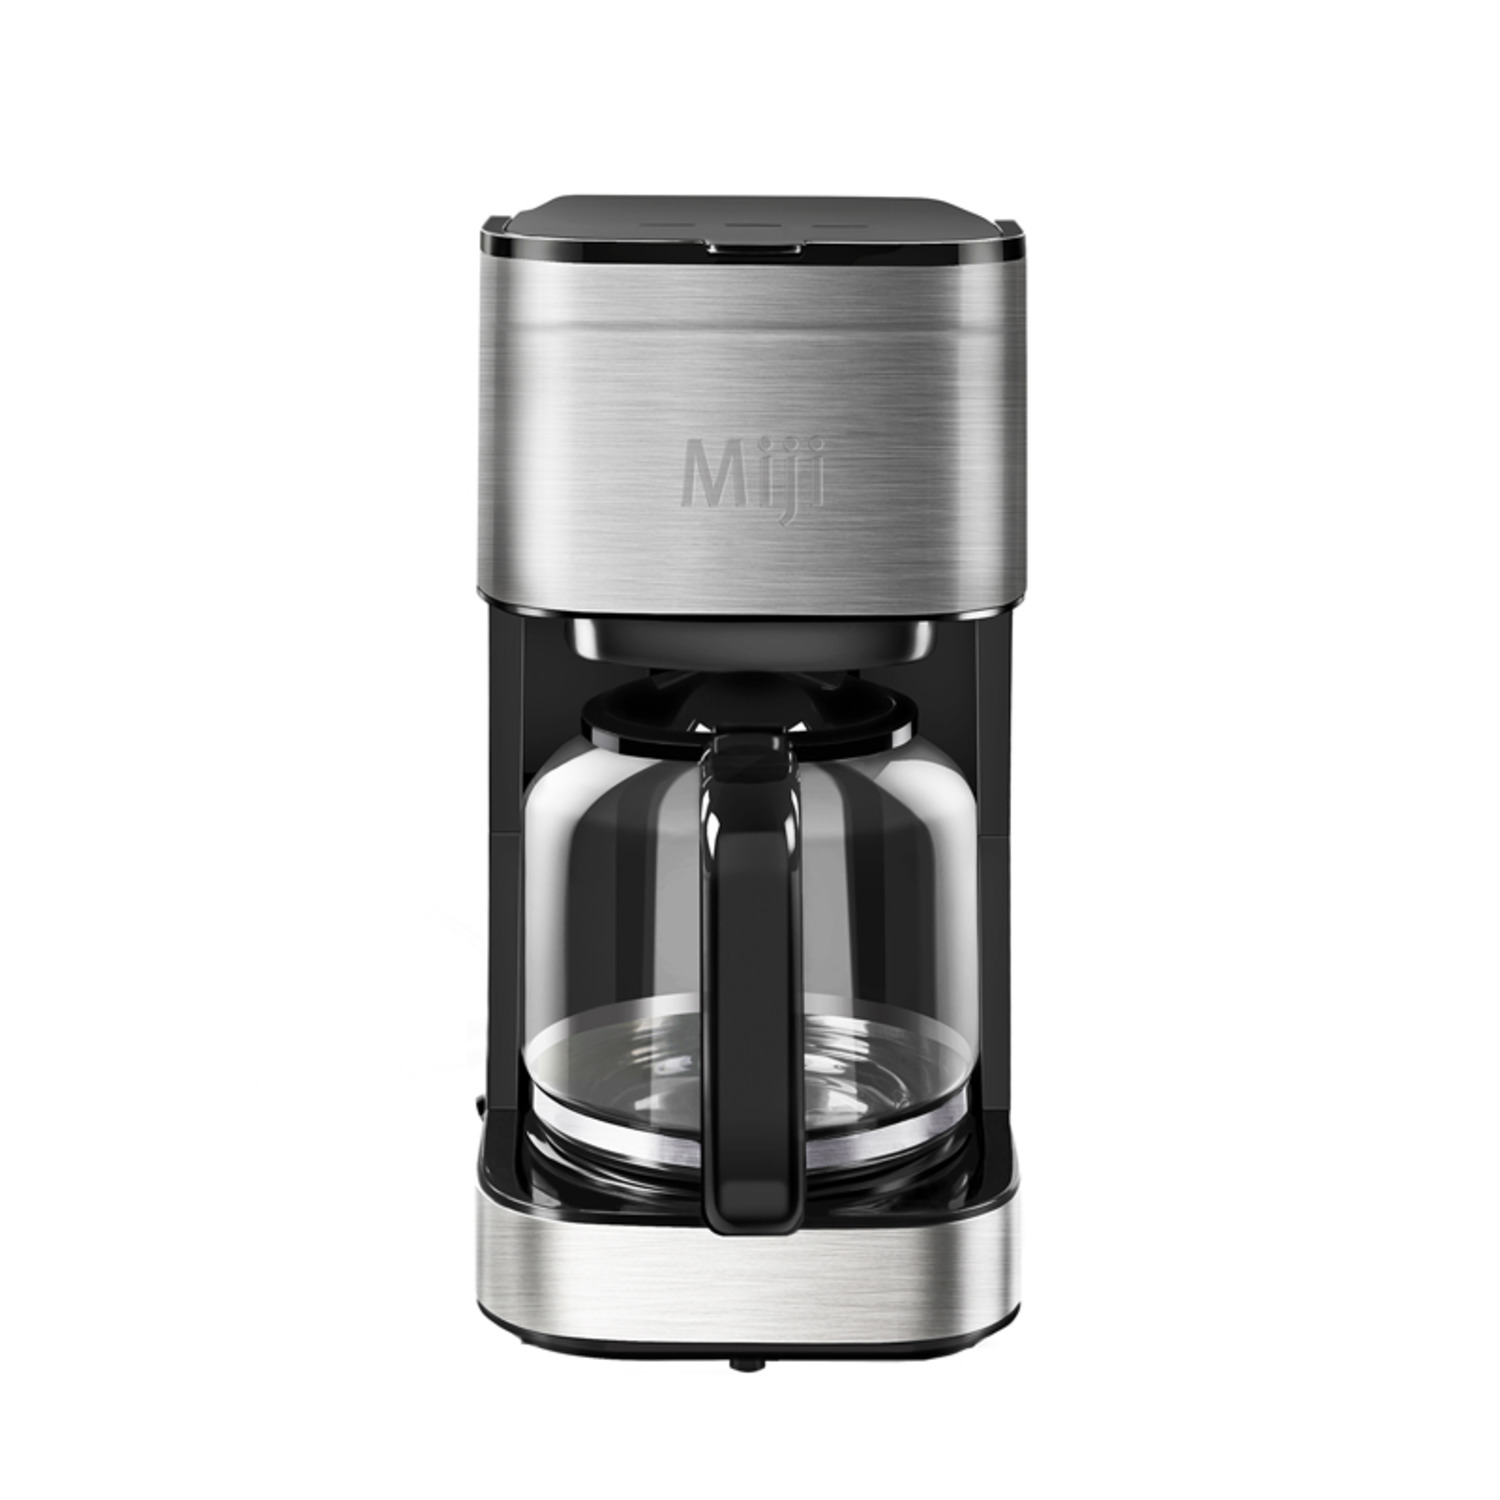 米技美式咖啡机ACM-252